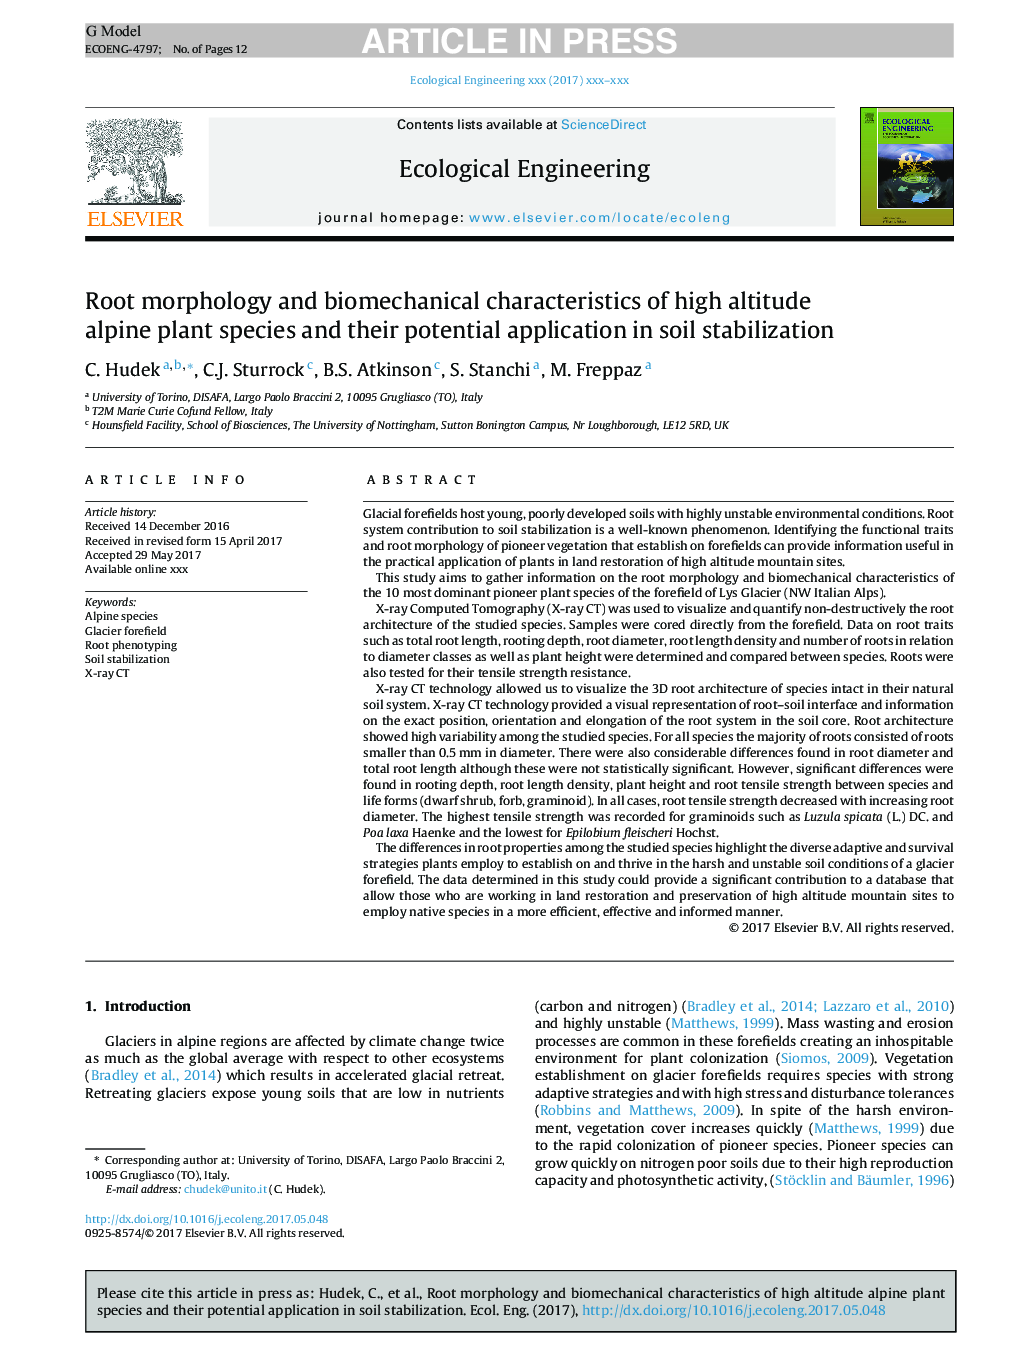 مورفولوژی ریشه و ویژگی های بیومکانیکی گونه های گیاه آلپ ارتفاع بالایی و کاربرد بالقوه آنها در تثبیت خاک 